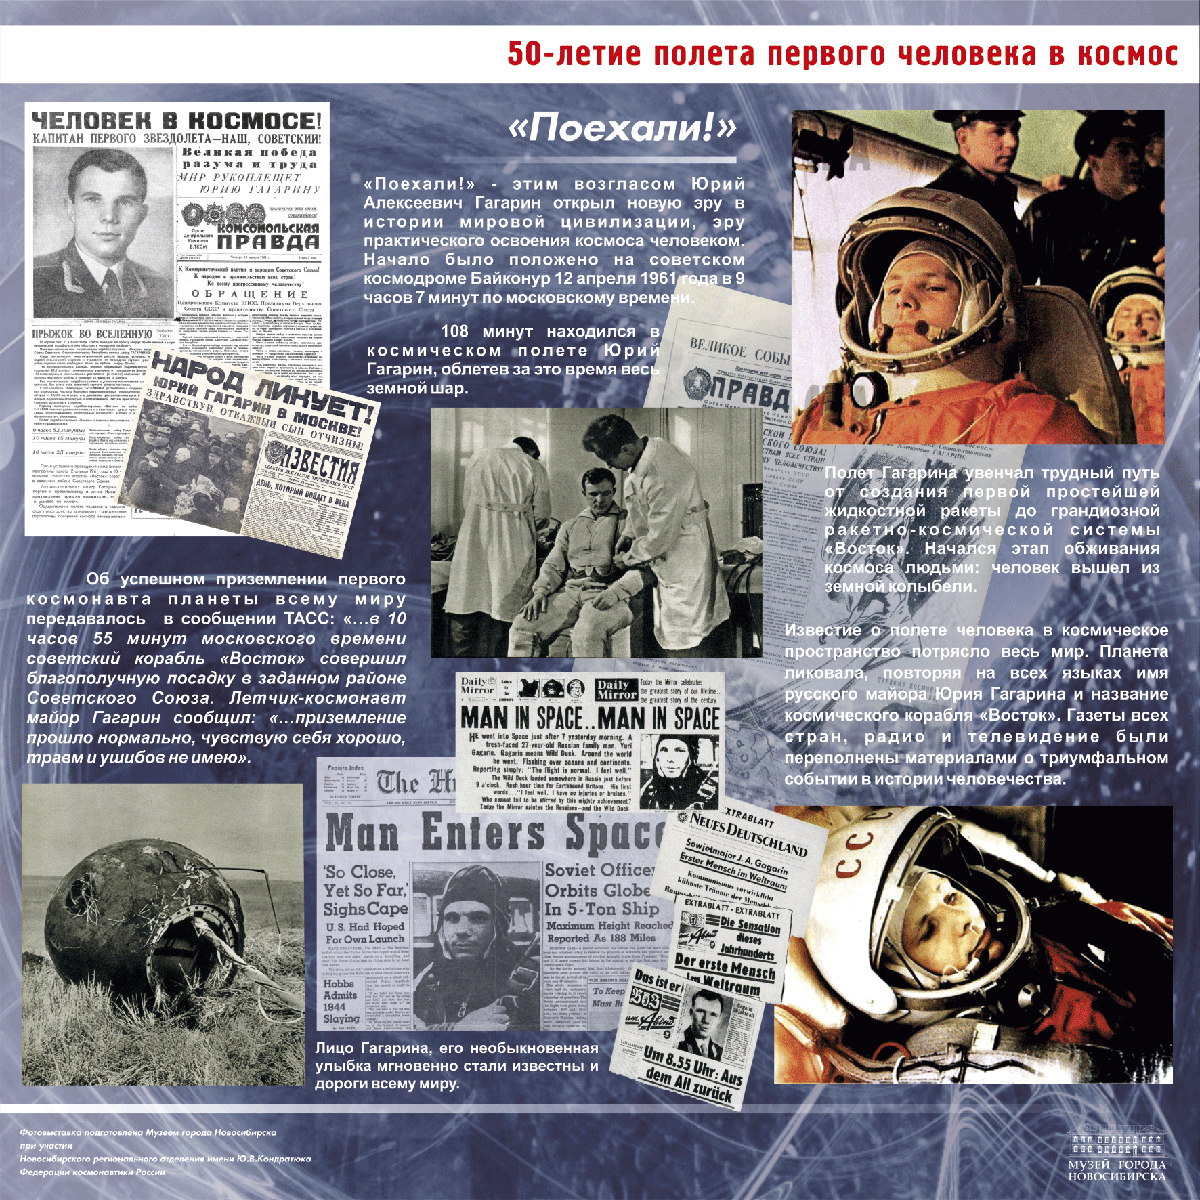 Газета ко дню космонавтики. 1961 Первый полет человека в космос. Полет Гагарина в космос 12 апреля 1961. 60 Летие полета Гагарина в космос.